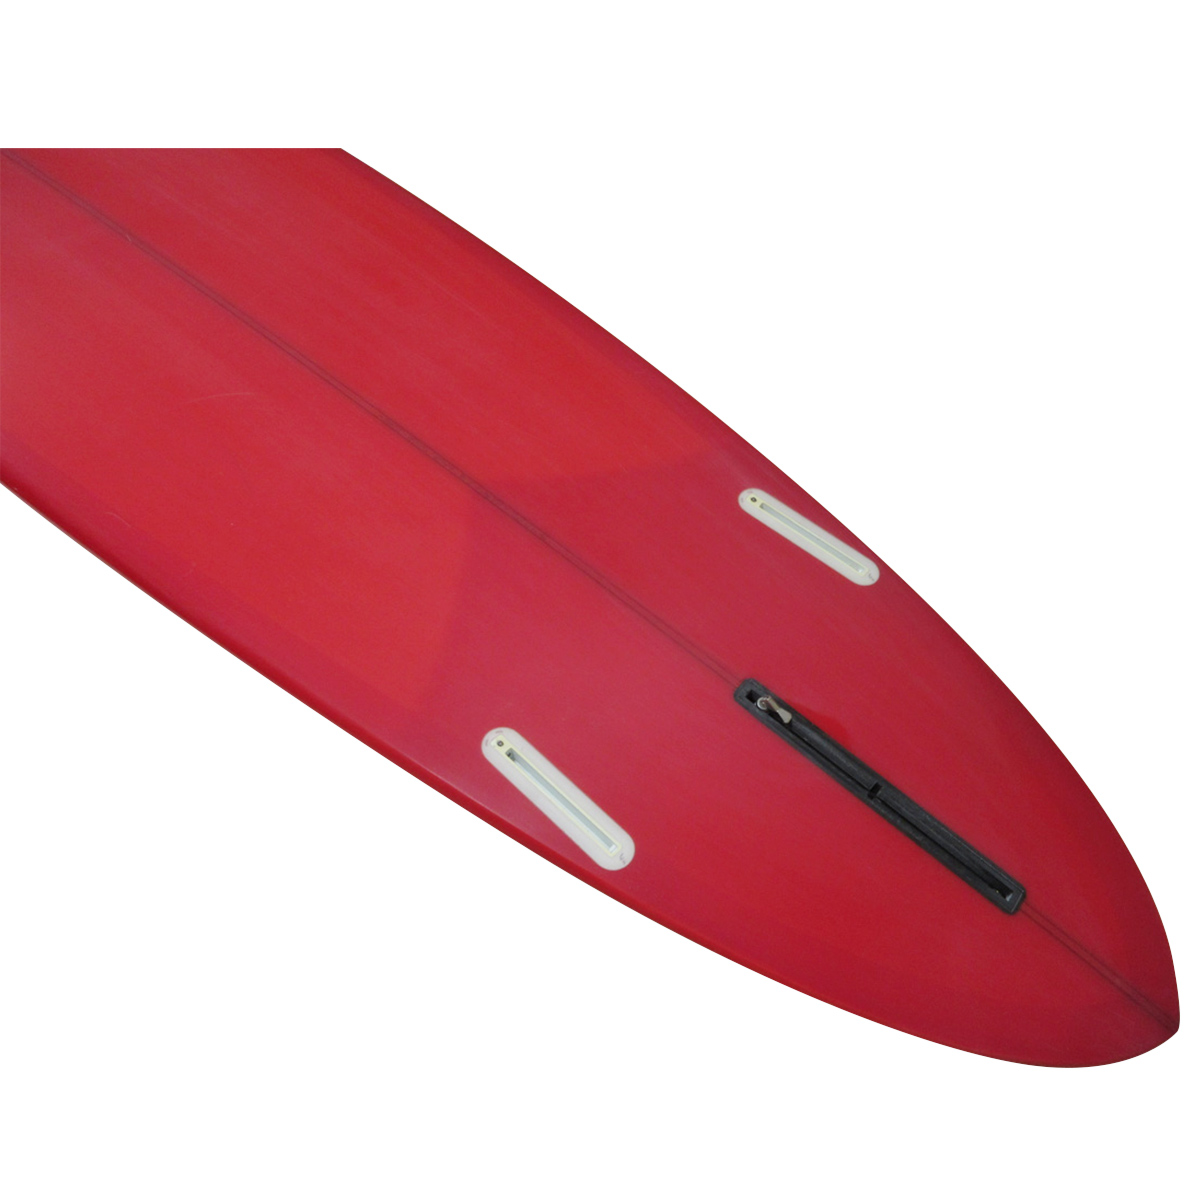 TUDOR SURFBOARDS  / 9`2 HPNR Shaped By HANK BYZAK 